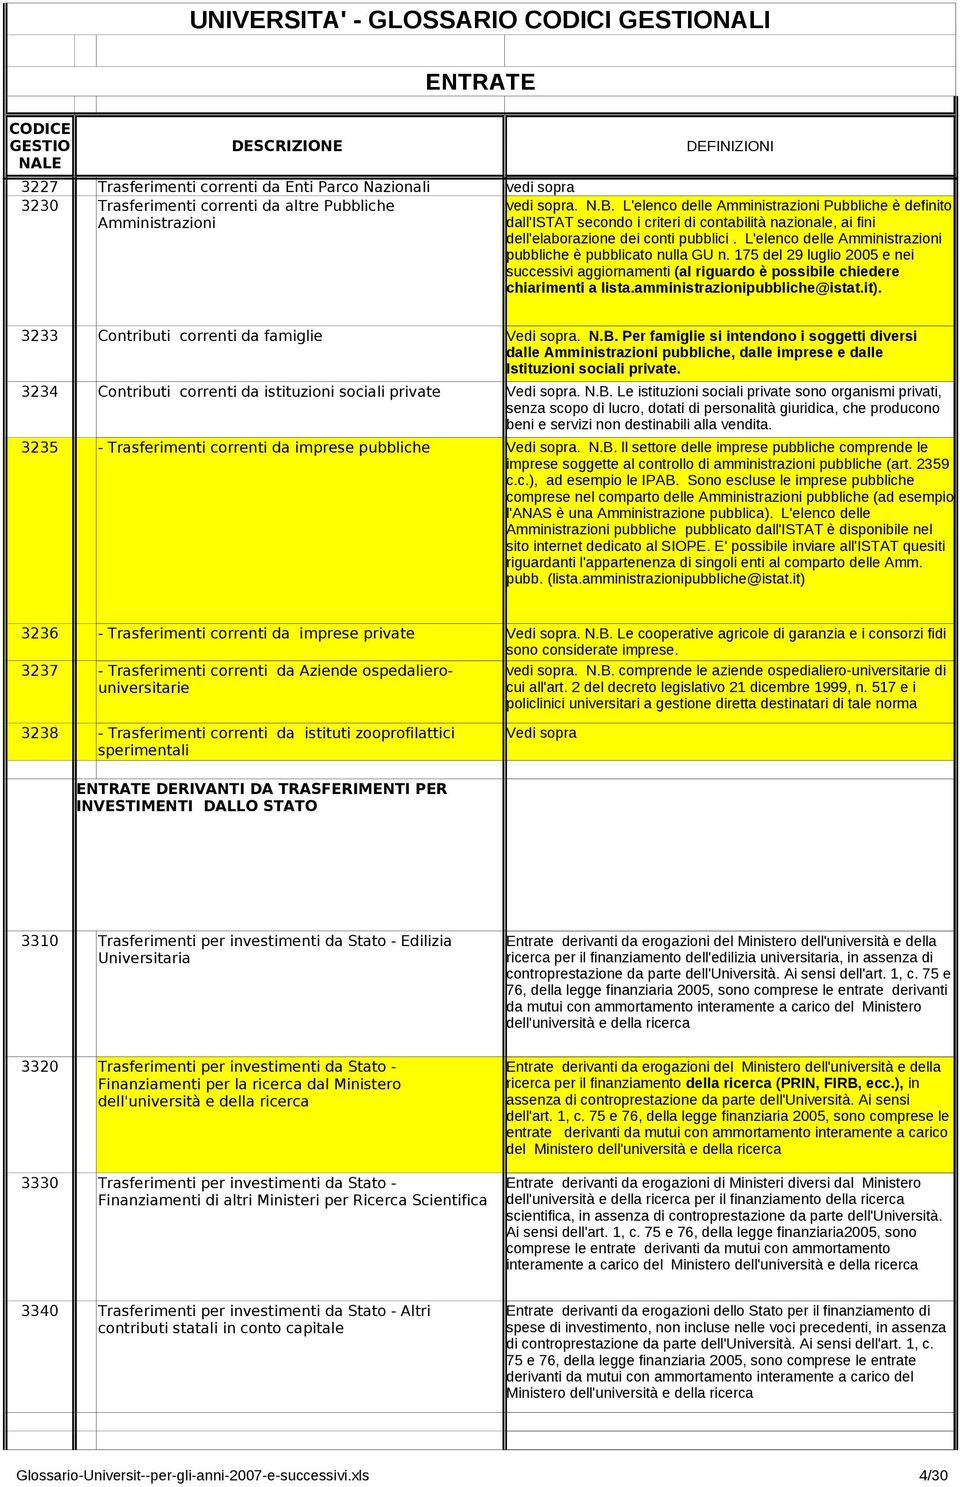 L'elenco delle Amministrazioni pubbliche è pubblicato nulla GU n. 175 del 29 luglio 2005 e nei successivi aggiornamenti (al riguardo è possibile chiedere chiarimenti a lista.